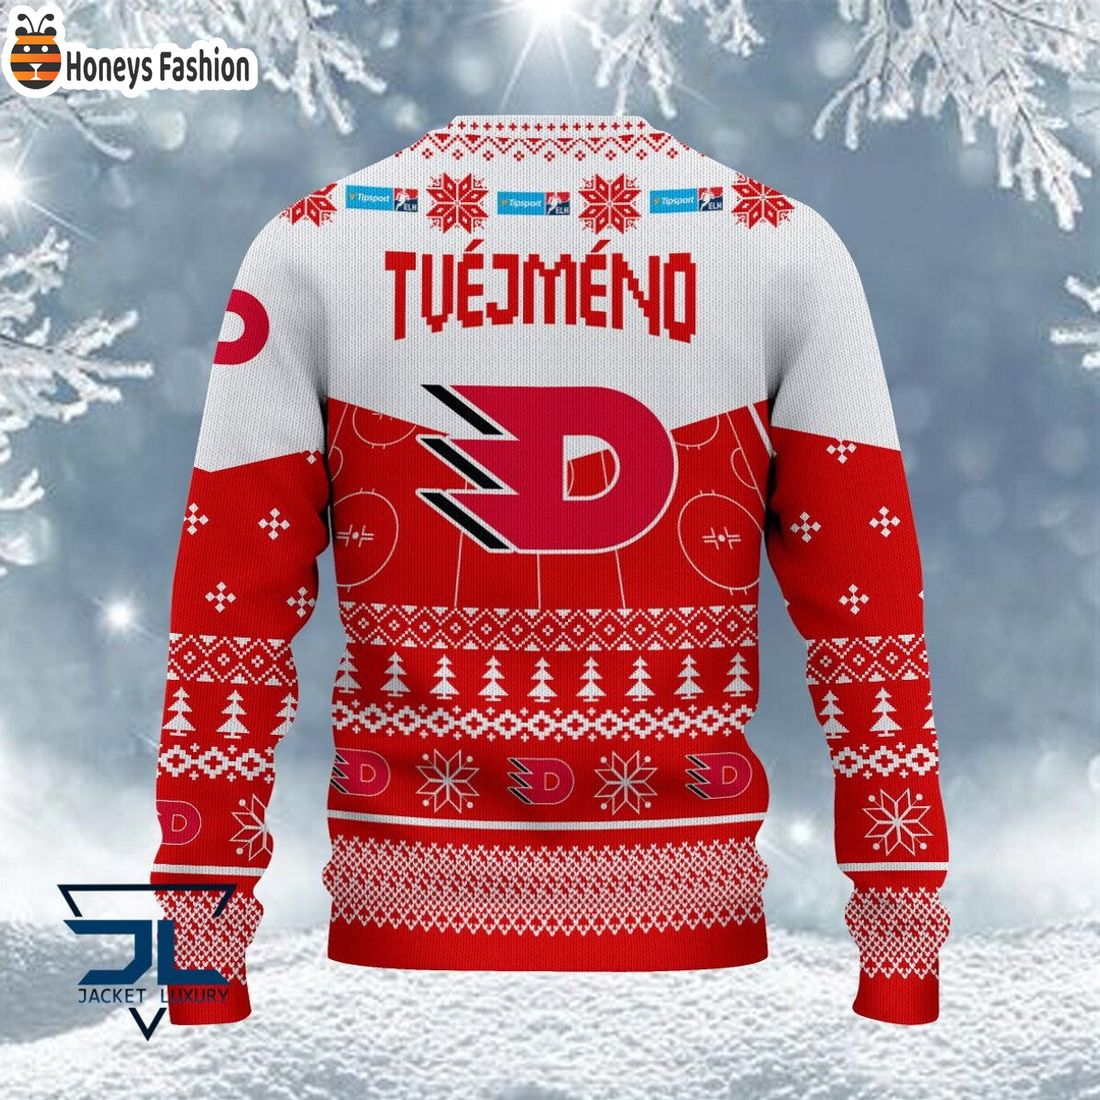 HC Dynamo Pardubice ošklivý vánoční svetr